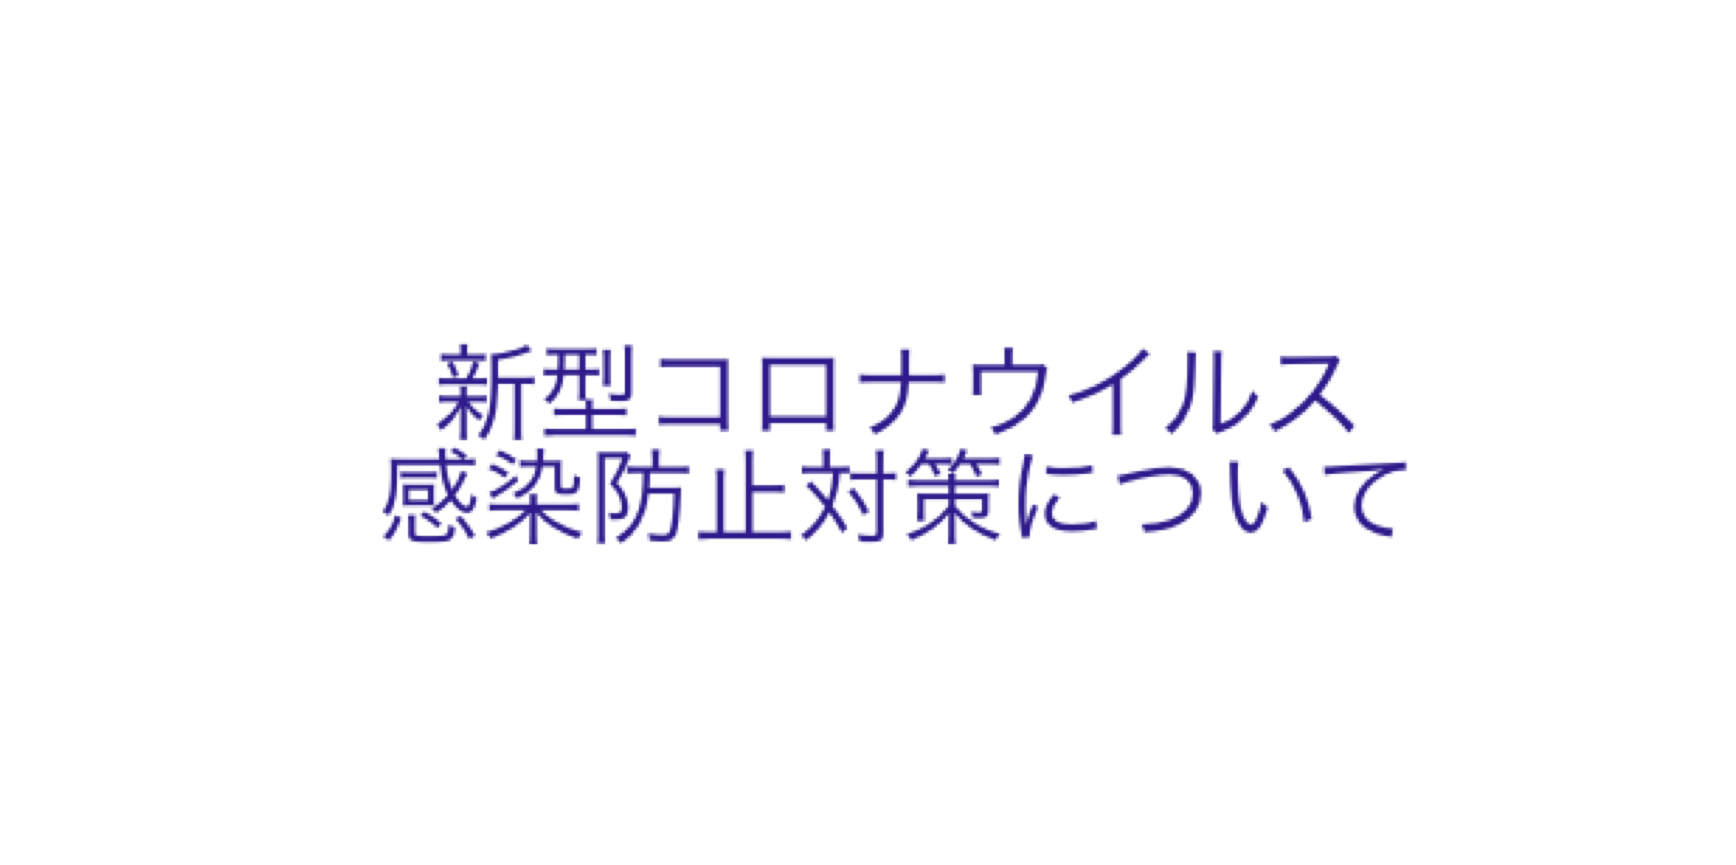 「安心安全な神戸の旅を提供する」をスローガンに感染防止対策を実施しております。《11/1更新》